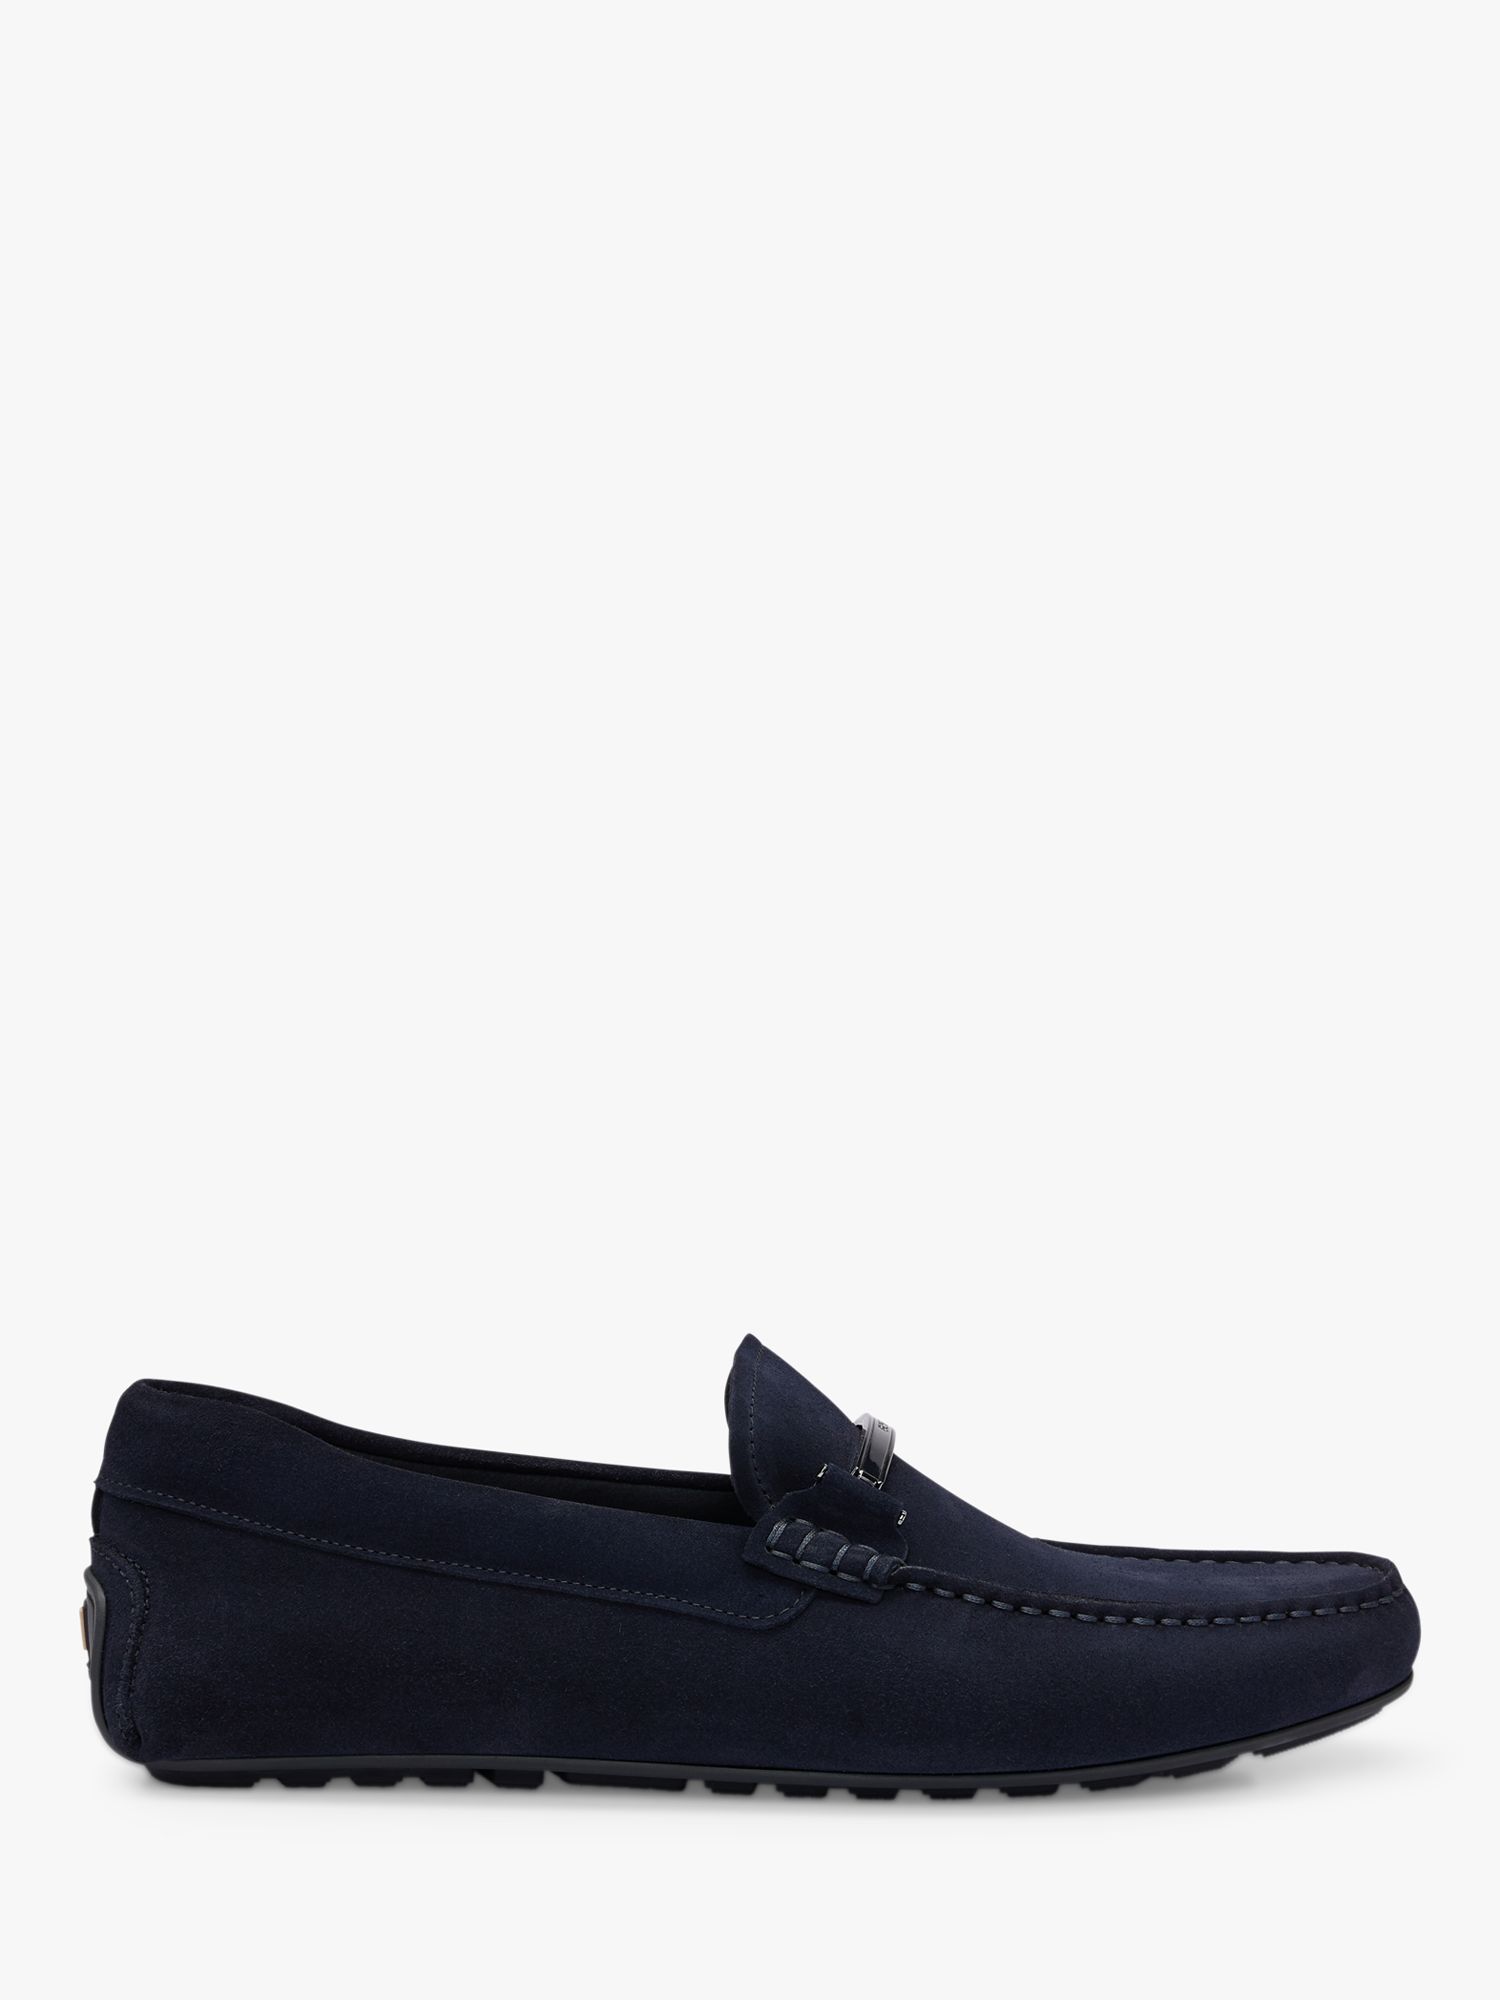 BOSS Noel Leather Loafers, Dark Blue, 10